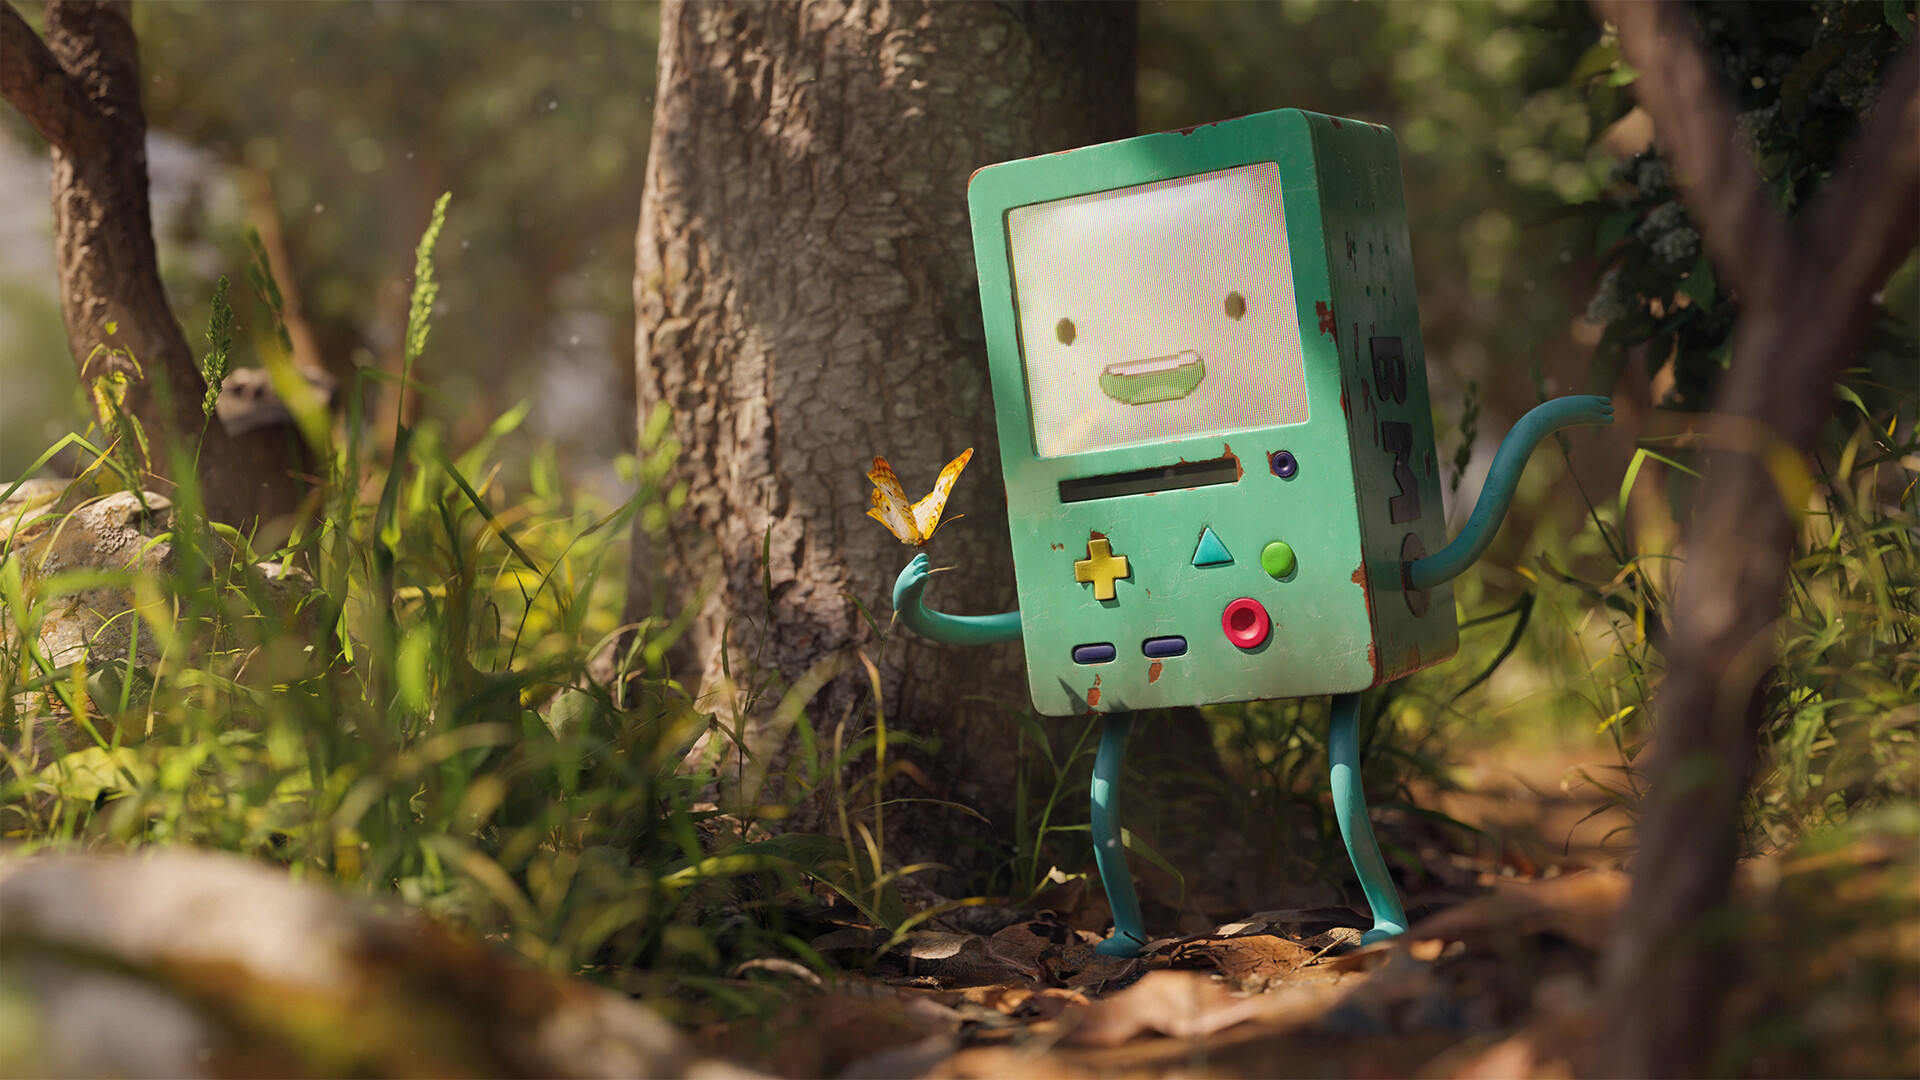 Adventure Time Forest Console BMO Smiling Fan Art Digital Art Blender Rachel Frick 3D 1920x1080